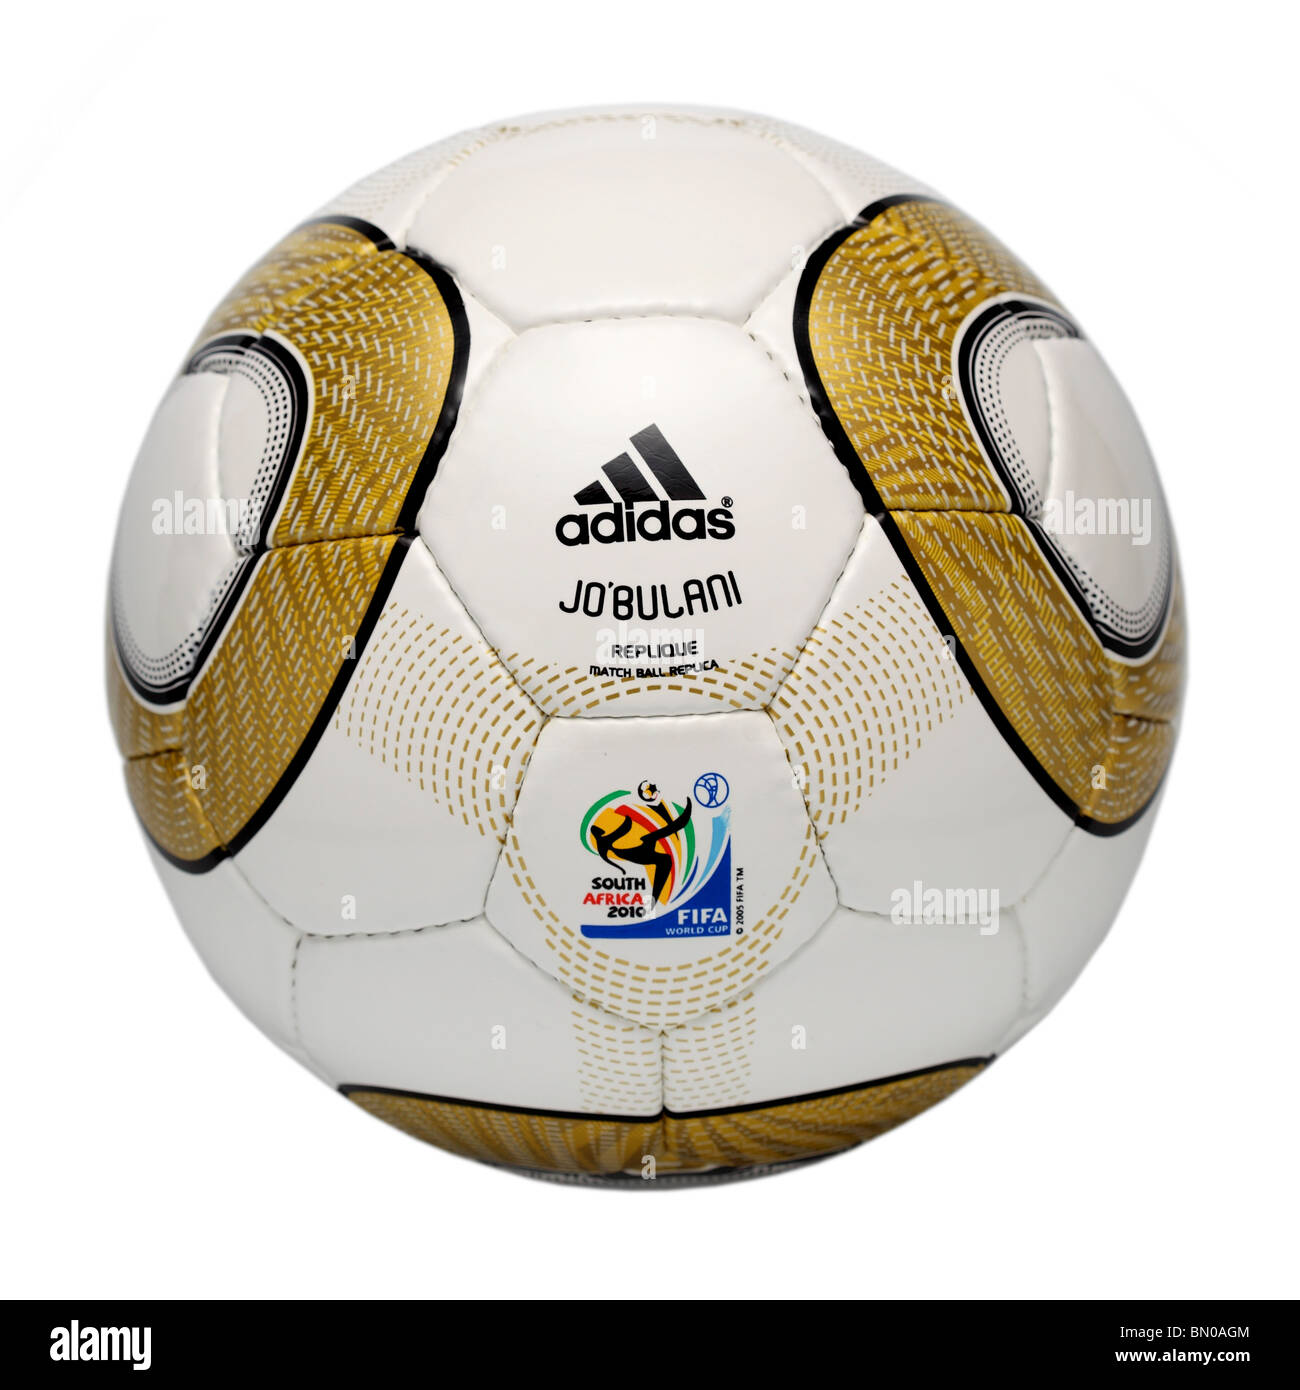 world cup replica ball